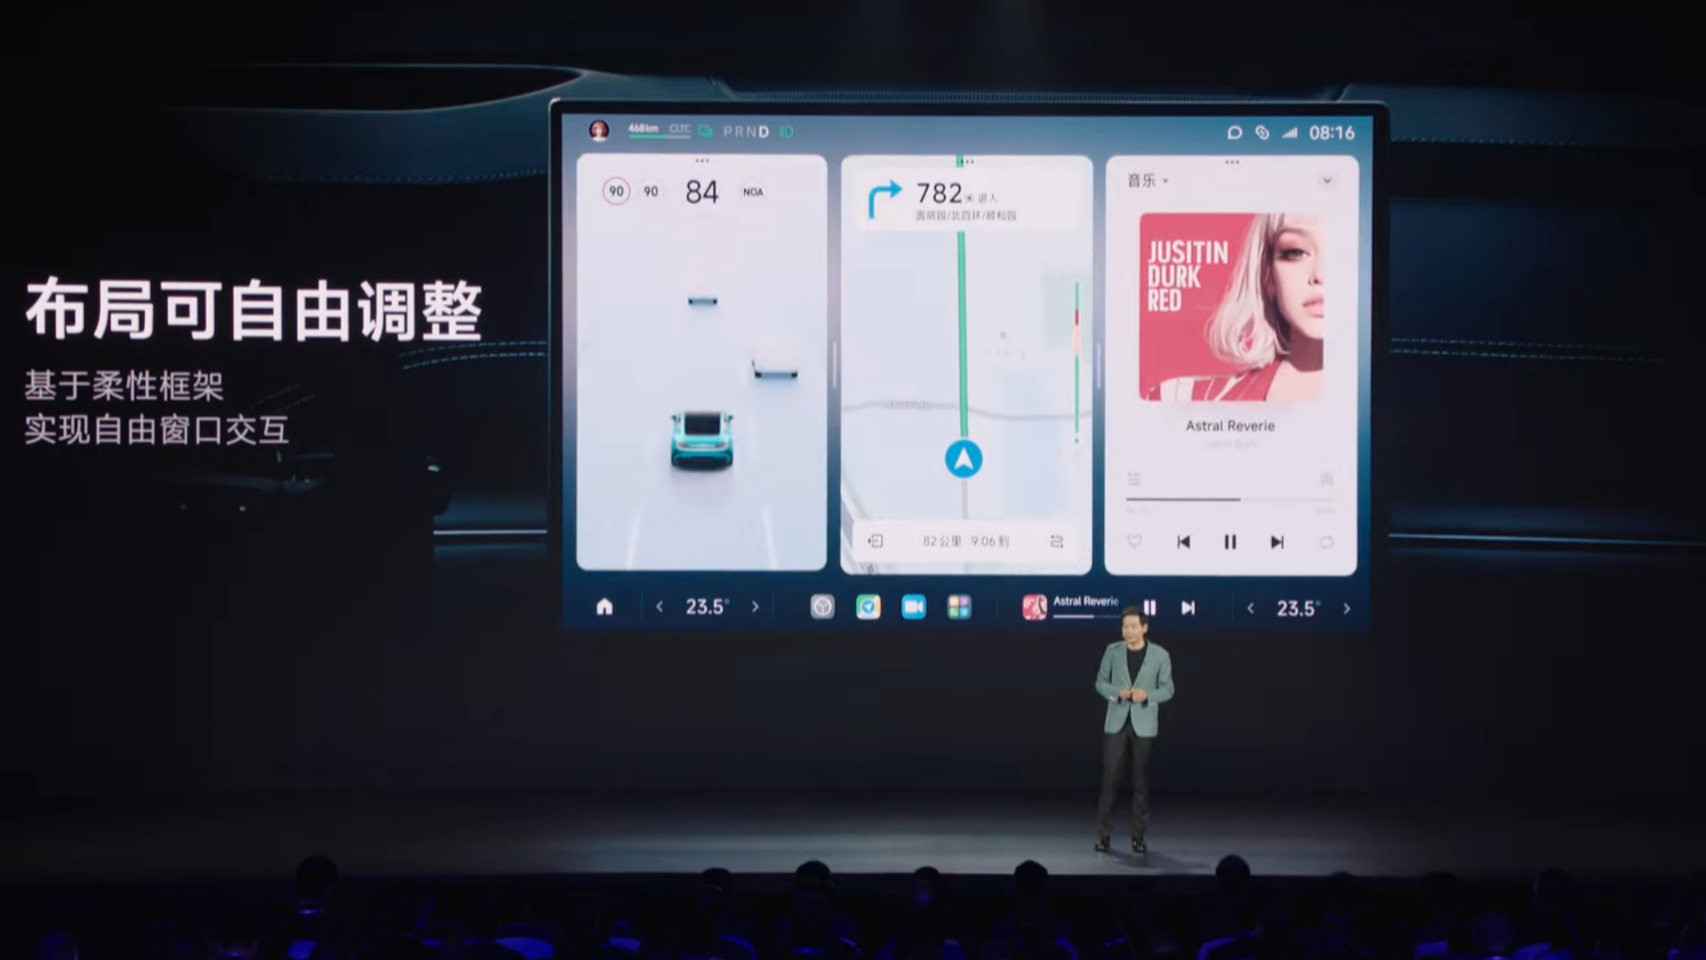 La pantalla del Xiaomi SU7 puede dividirse en varias apps al mismo tiempo